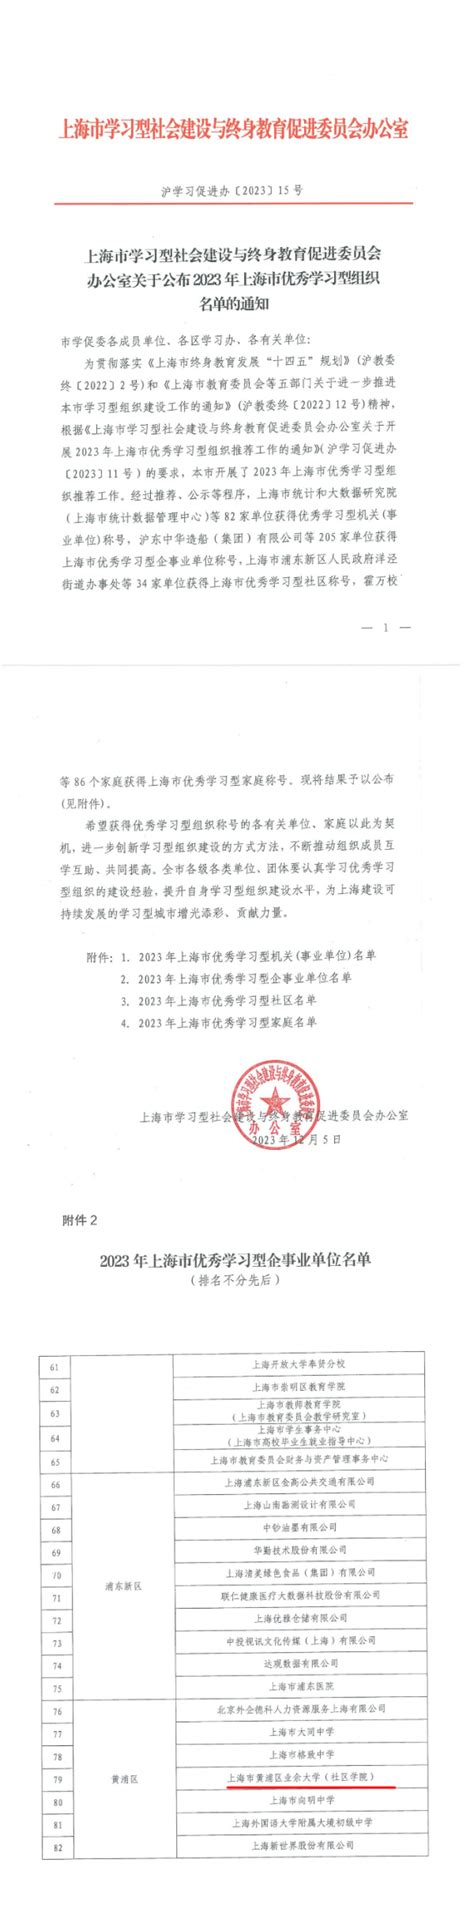 喜报：上海市黄浦区业余大学（社区学院）获评上海市优秀学习型企事业单位